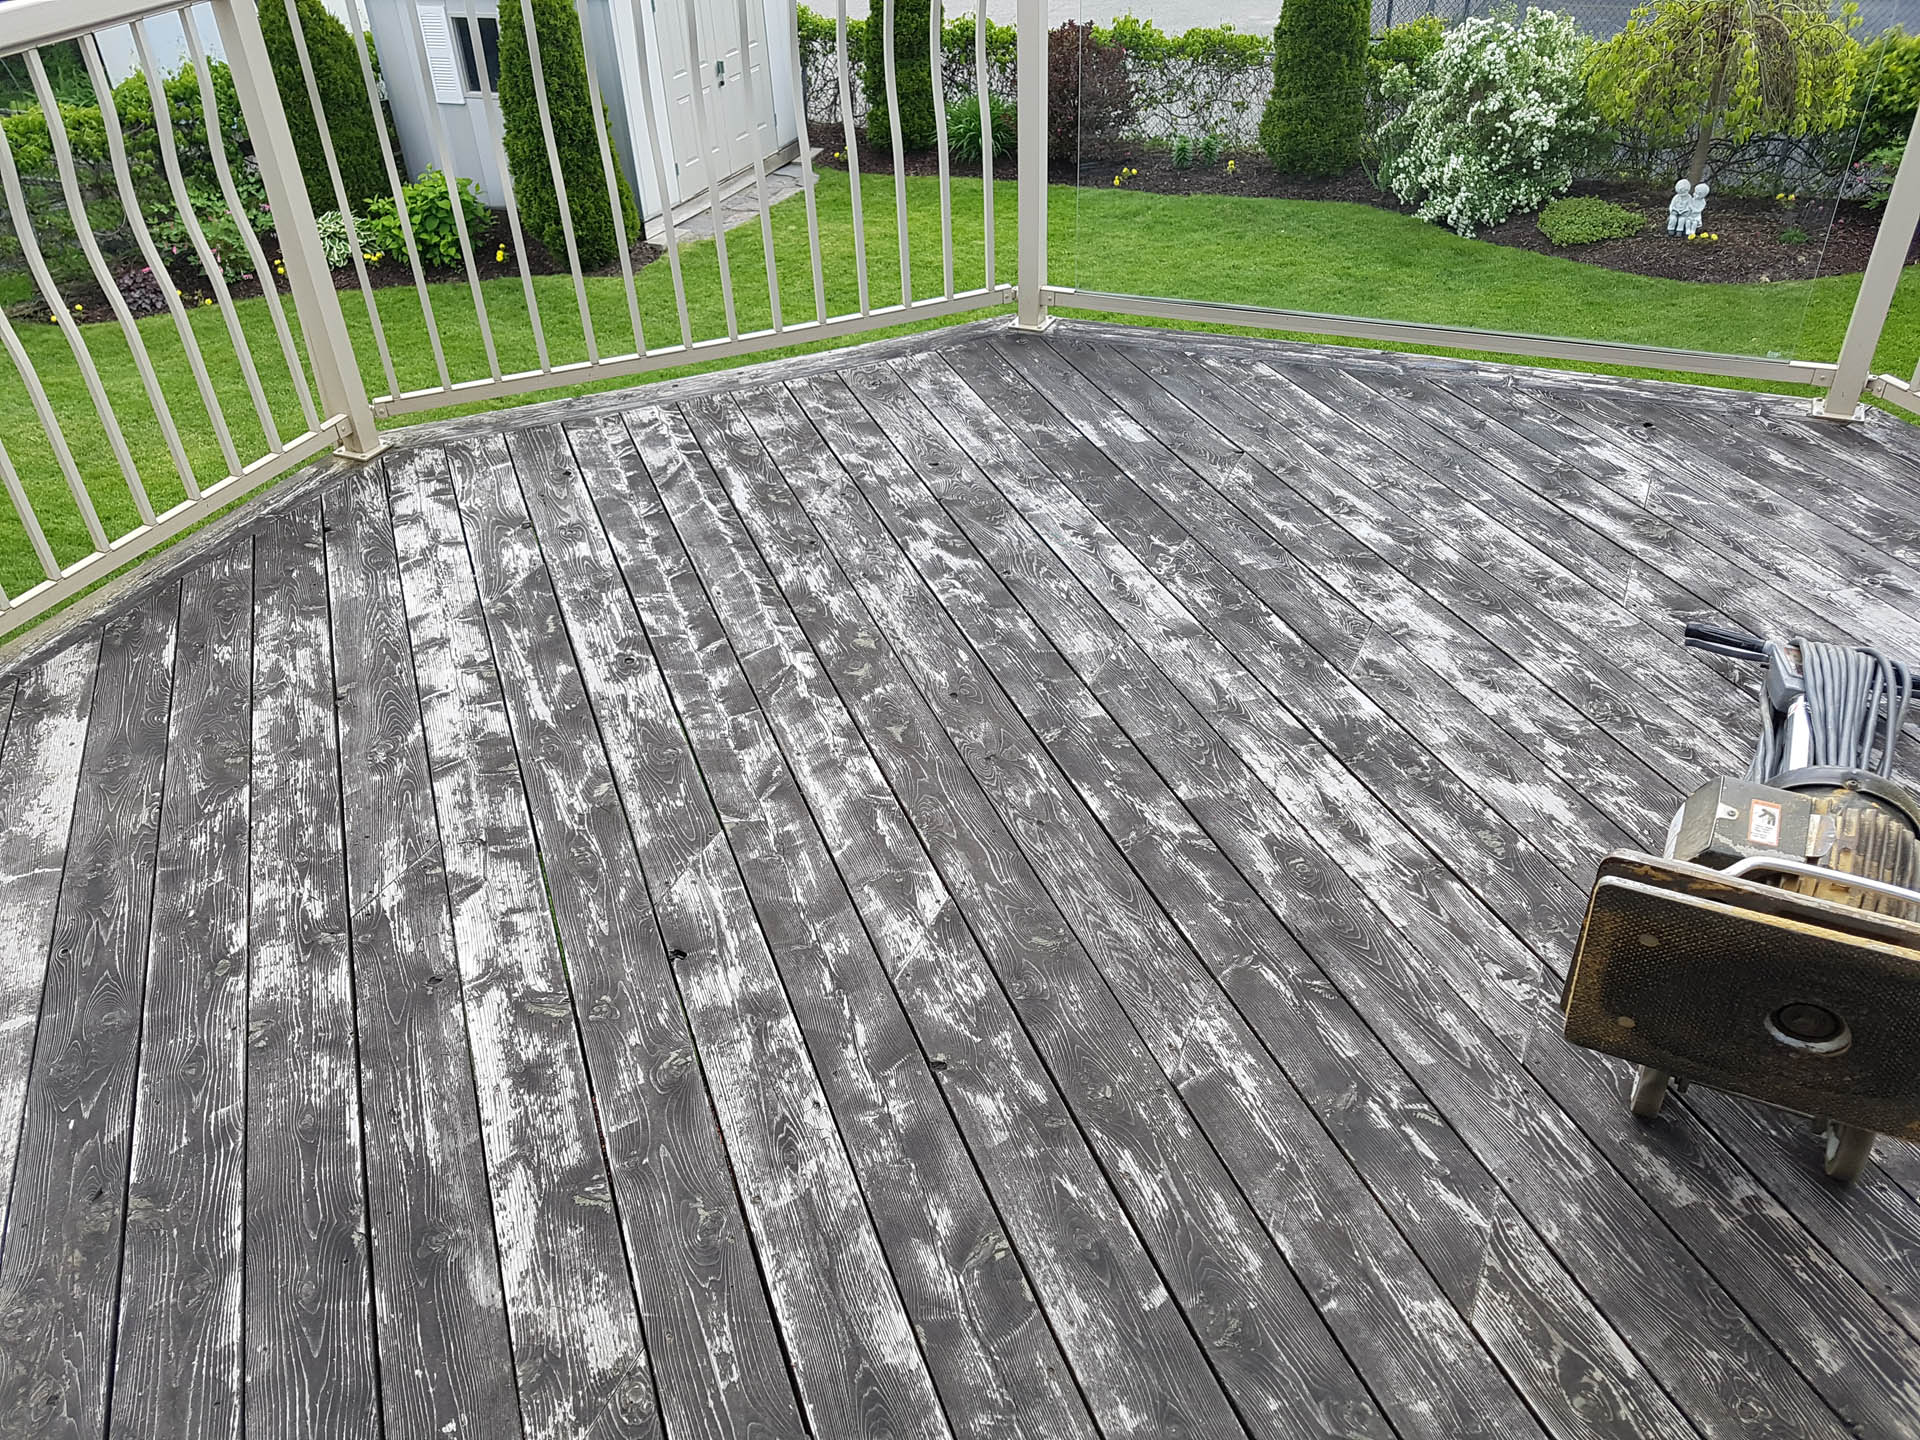 old worn deck